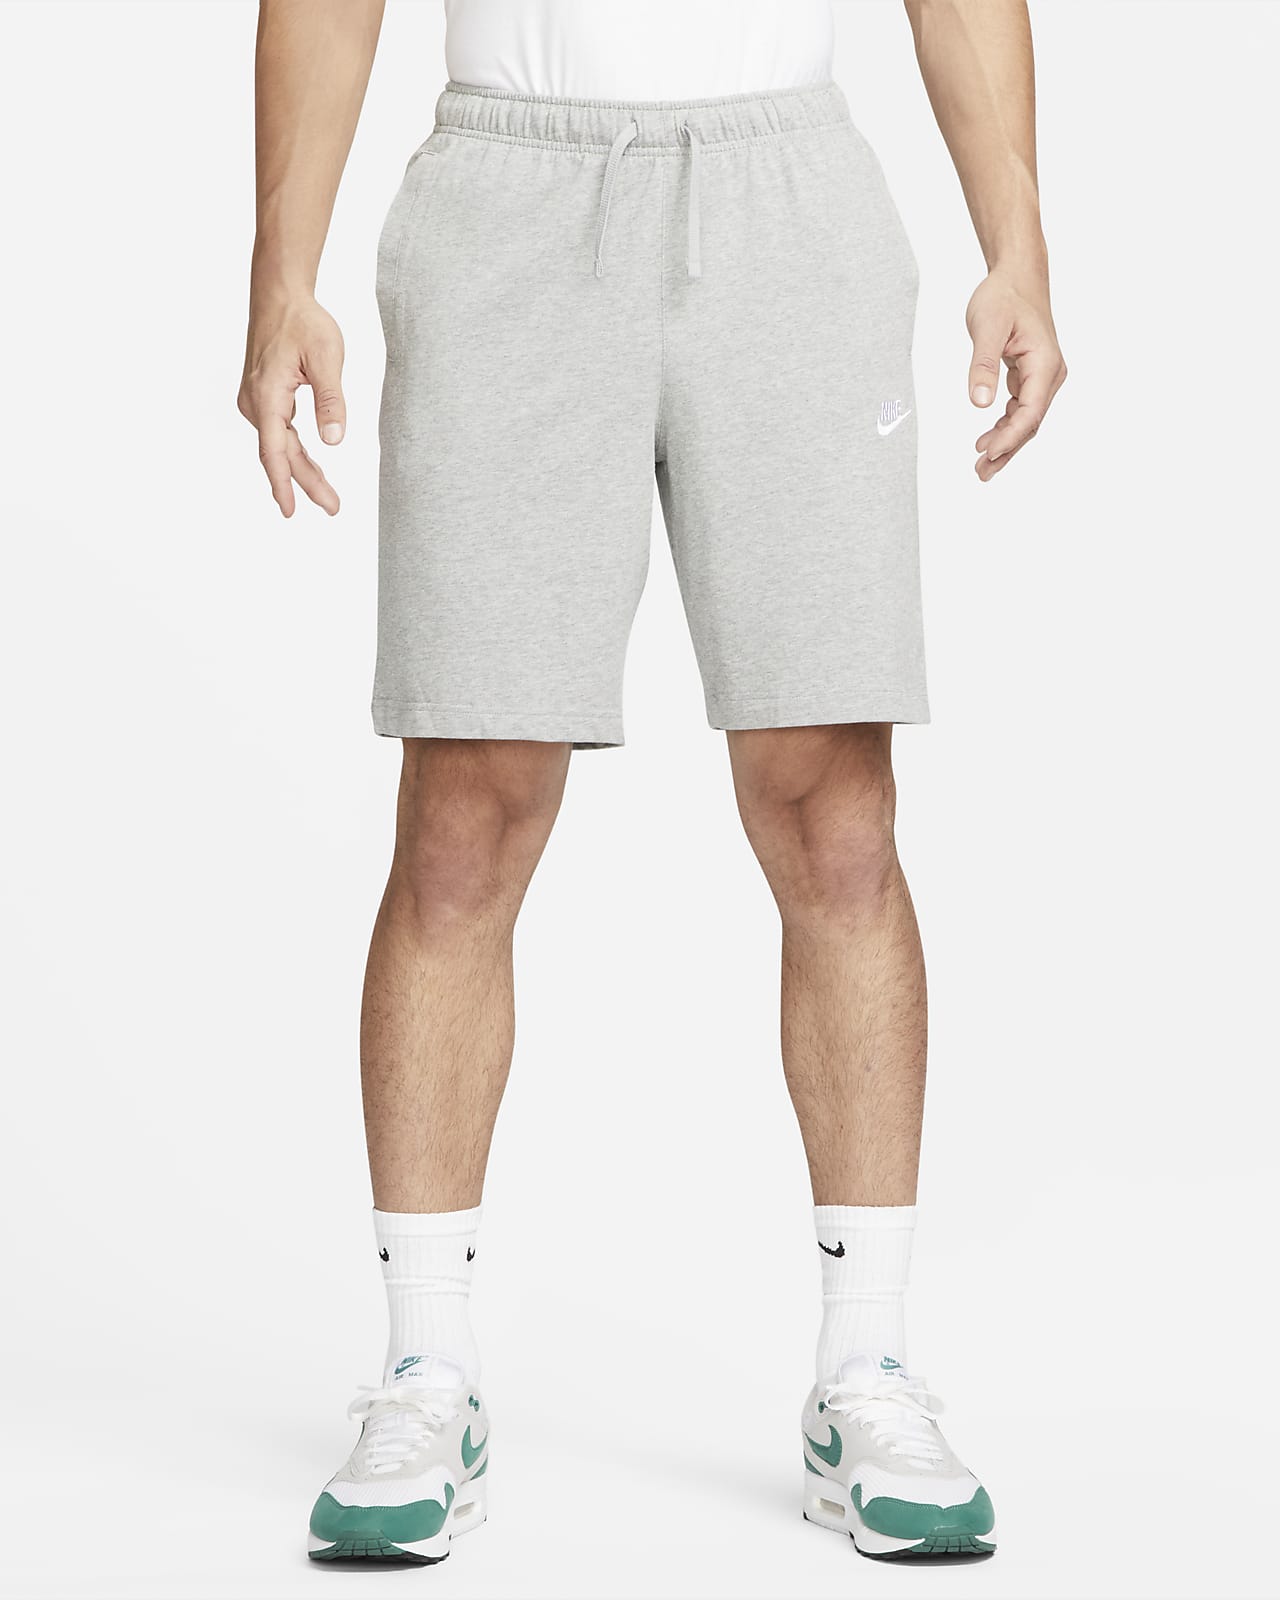 Мужские шорты Nike Sportswear Club. Nike RU